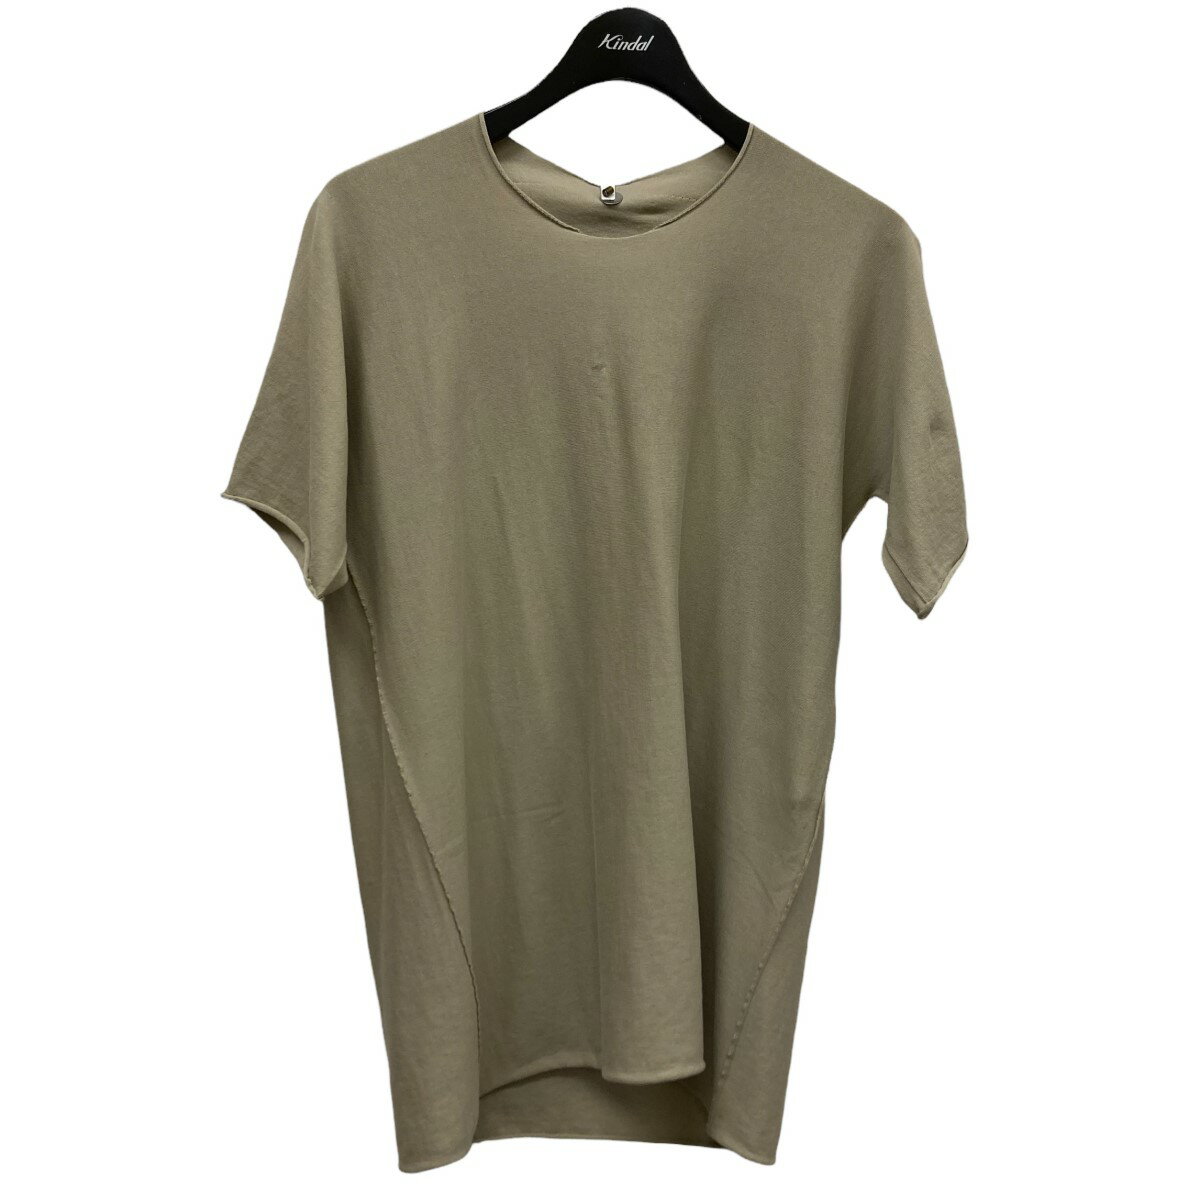 トップス, Tシャツ・カットソー LABEL UNDER CONSTRUCTION ARCHED T-SHIRT T 48 140622